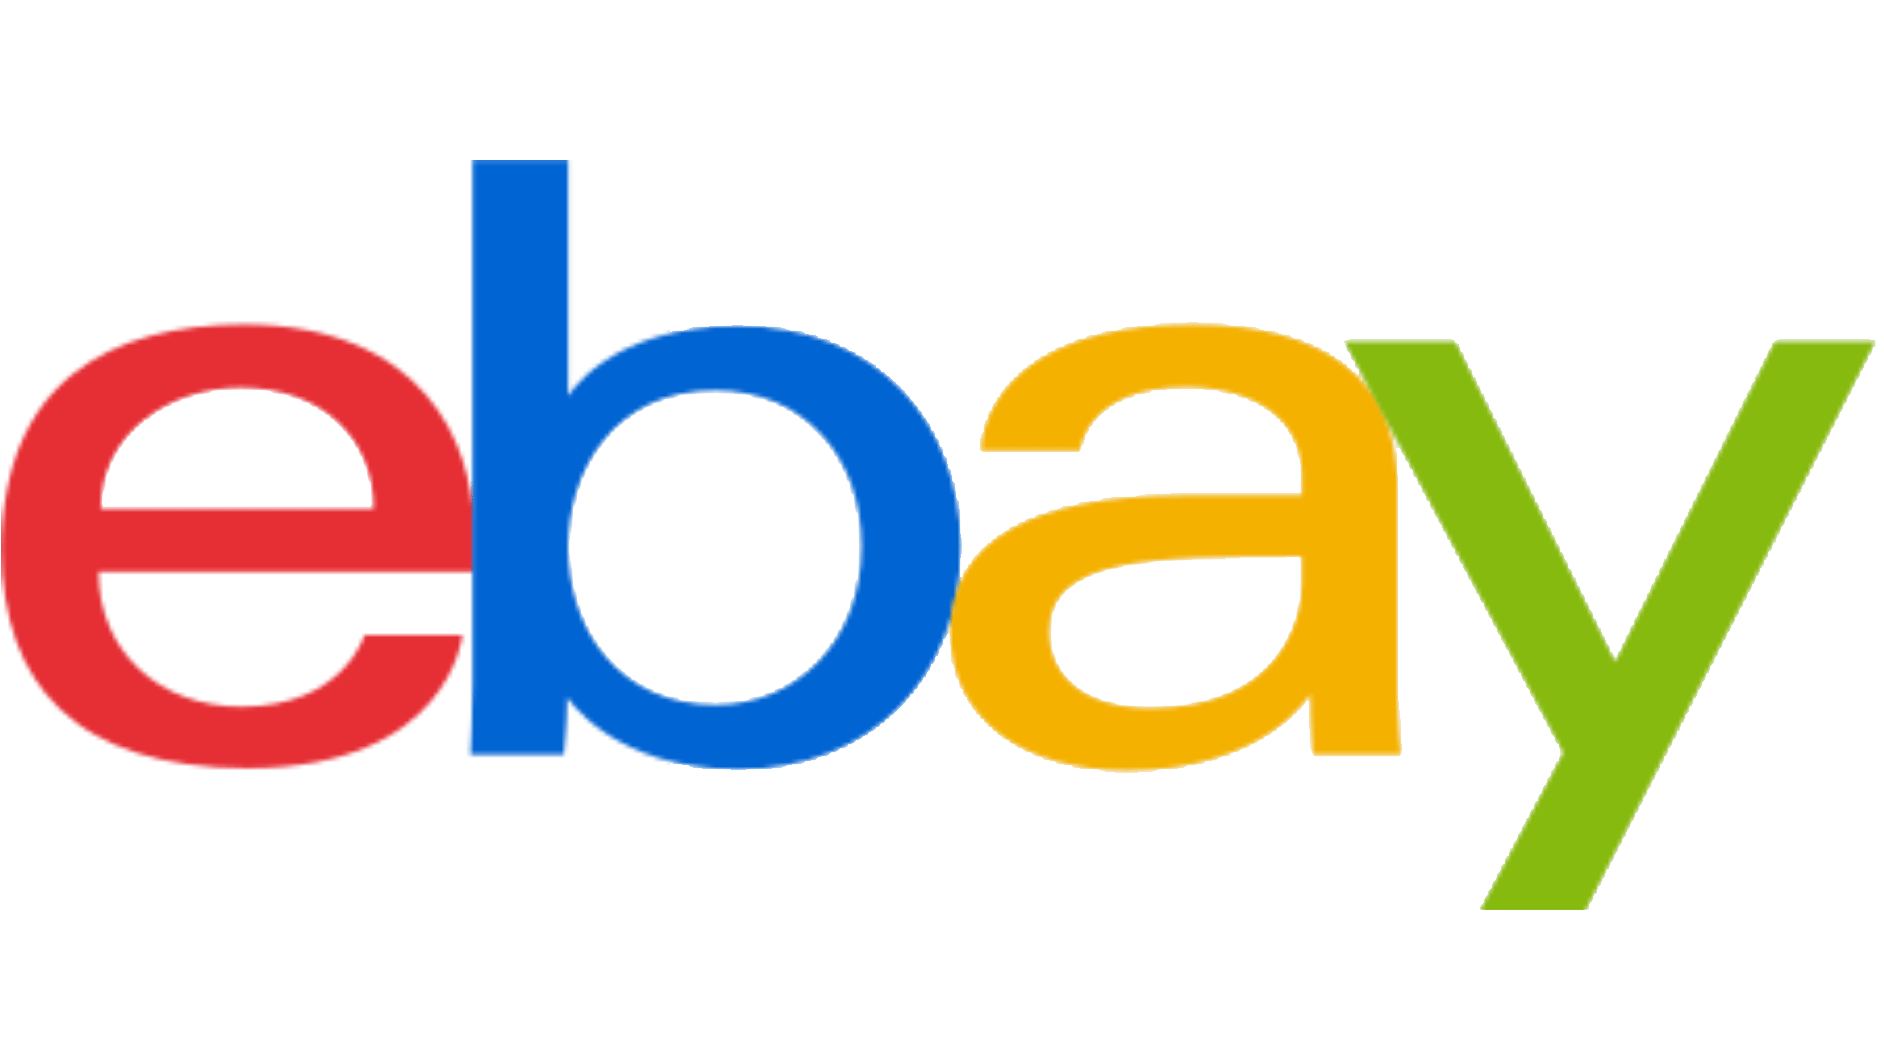 eBay.de: 10 Prozent einsparen per eBay Gutschein